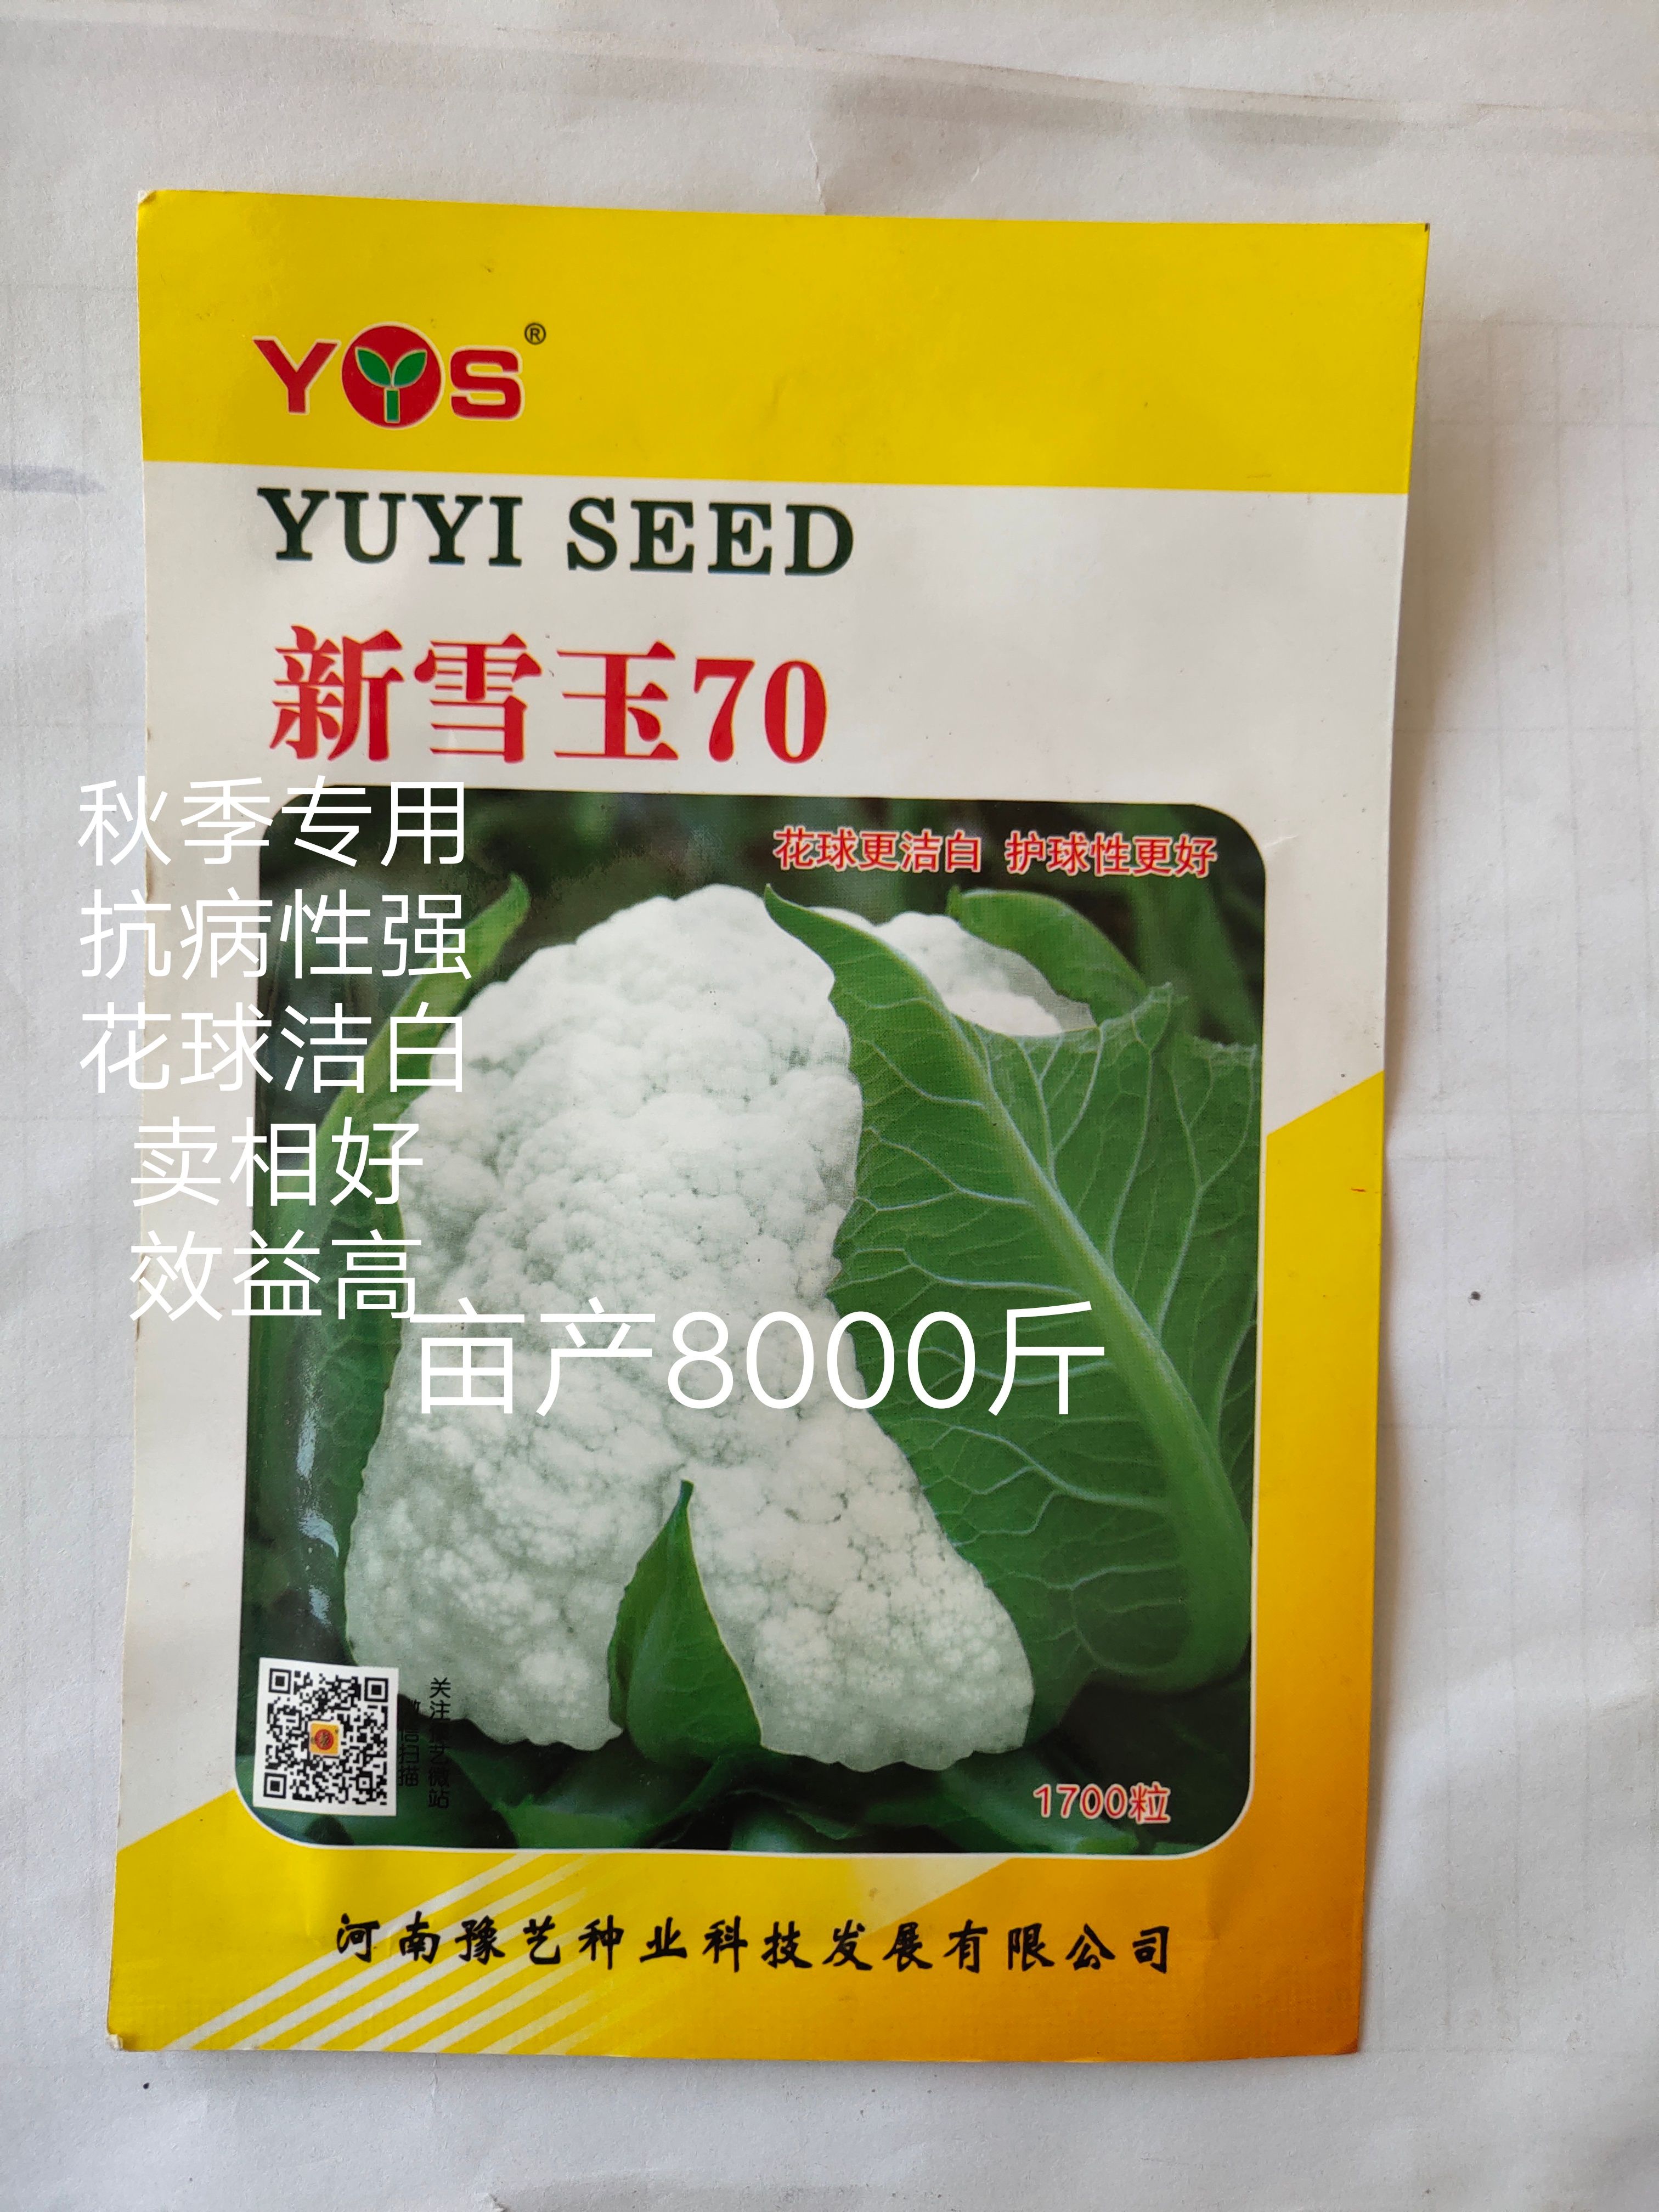 扶沟县新雪王70花菜种子花球更白更厚实外叶包球比其它高10%产